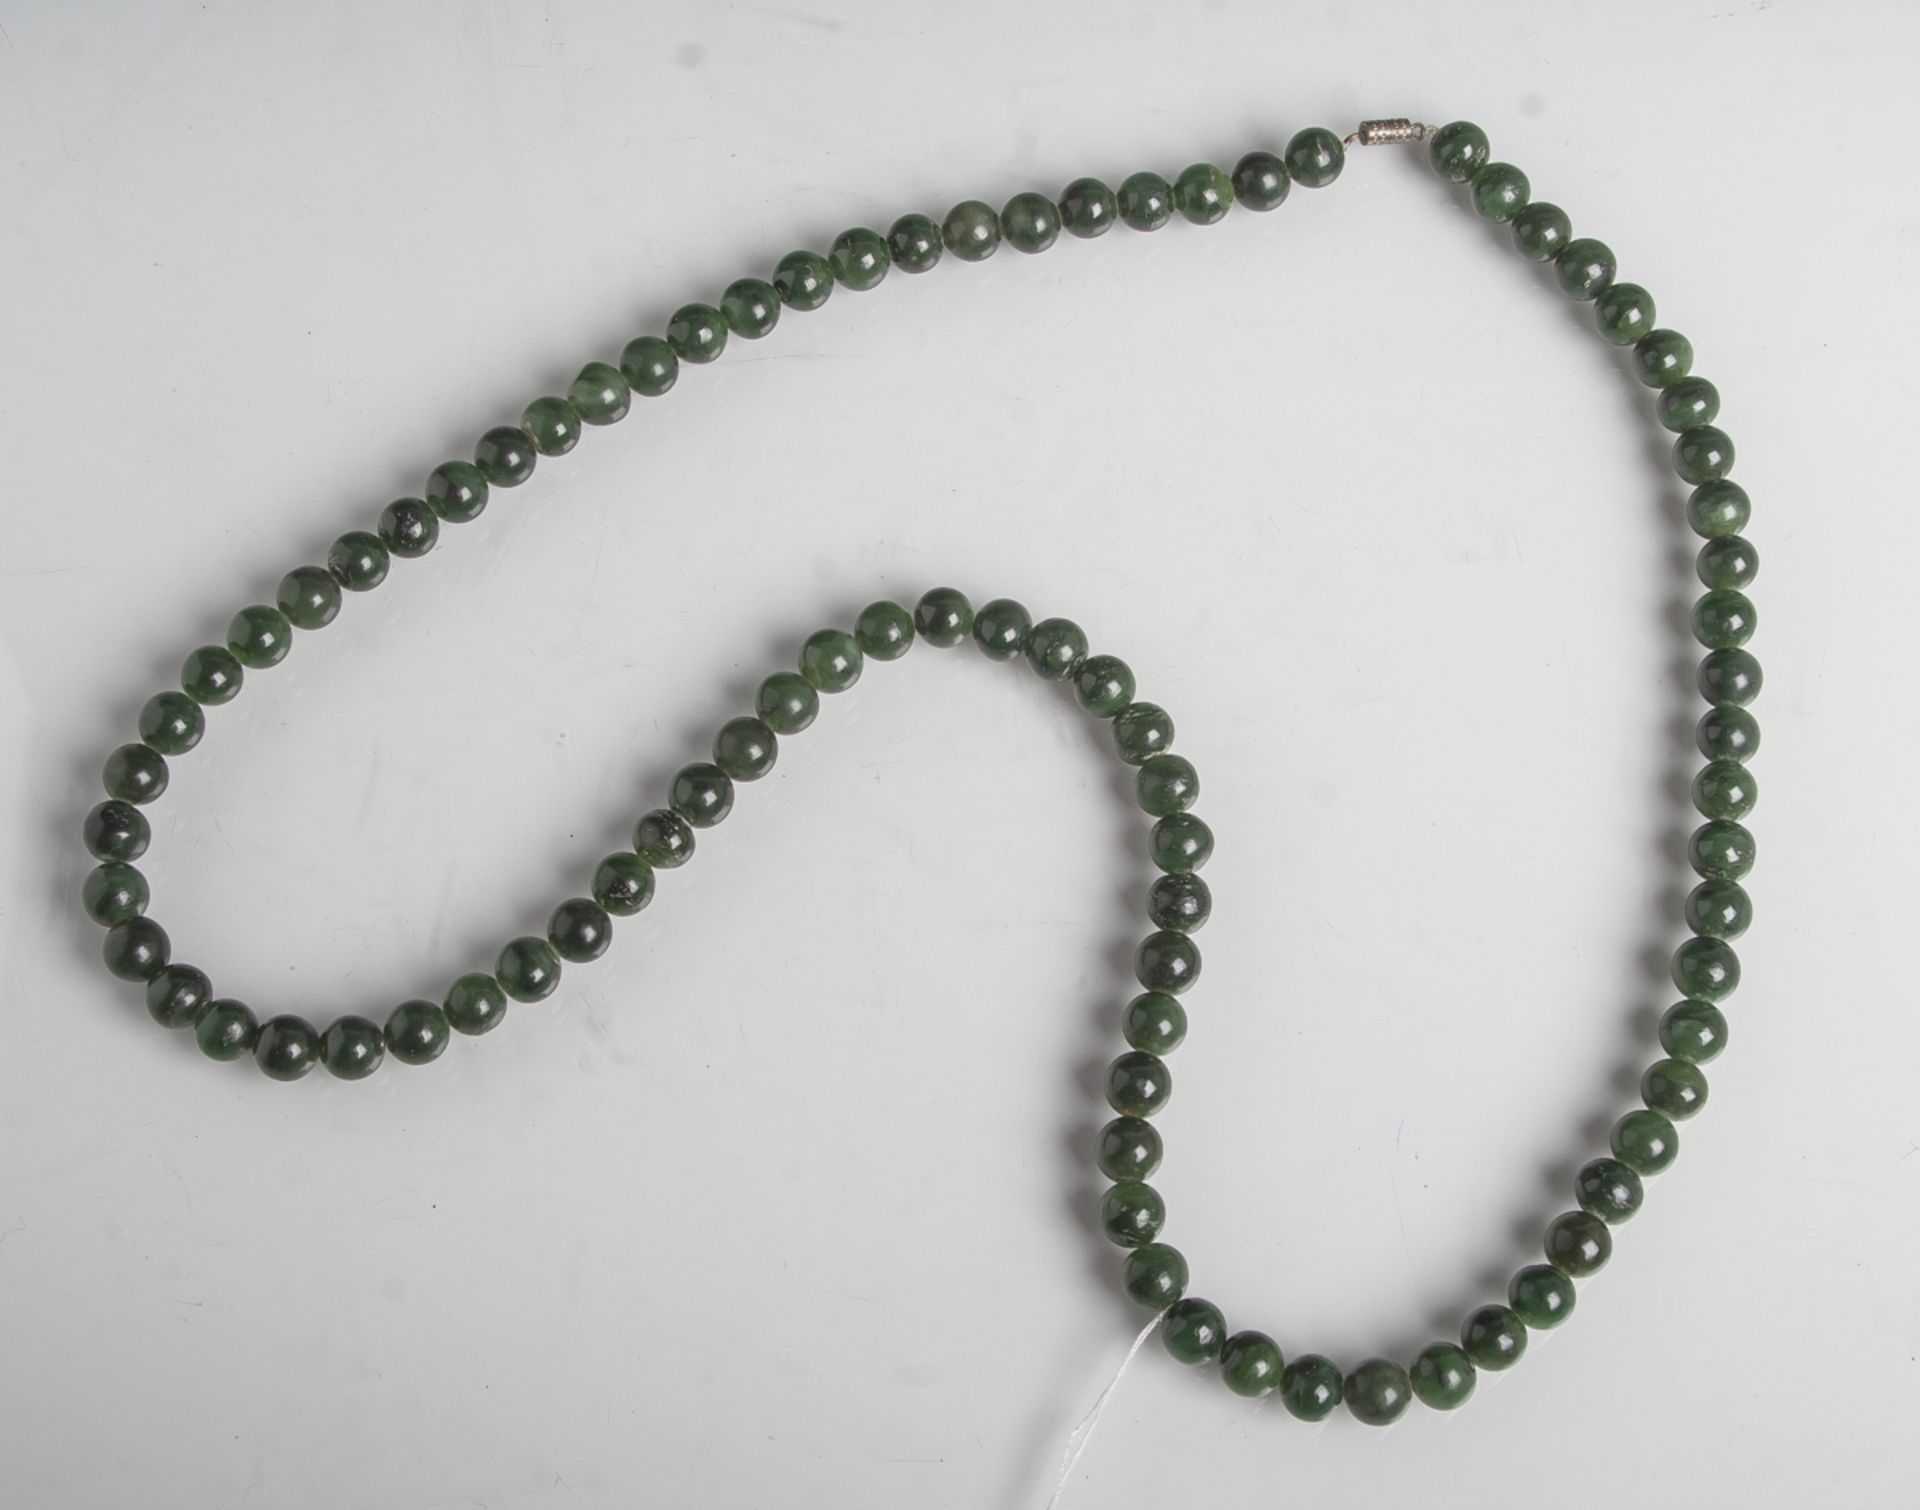 Halskette aus dunkelgrünen Jadekugeln mit Verschluss, L. ca 40 cm. Tragespuren.- - -21.00 % buyer'